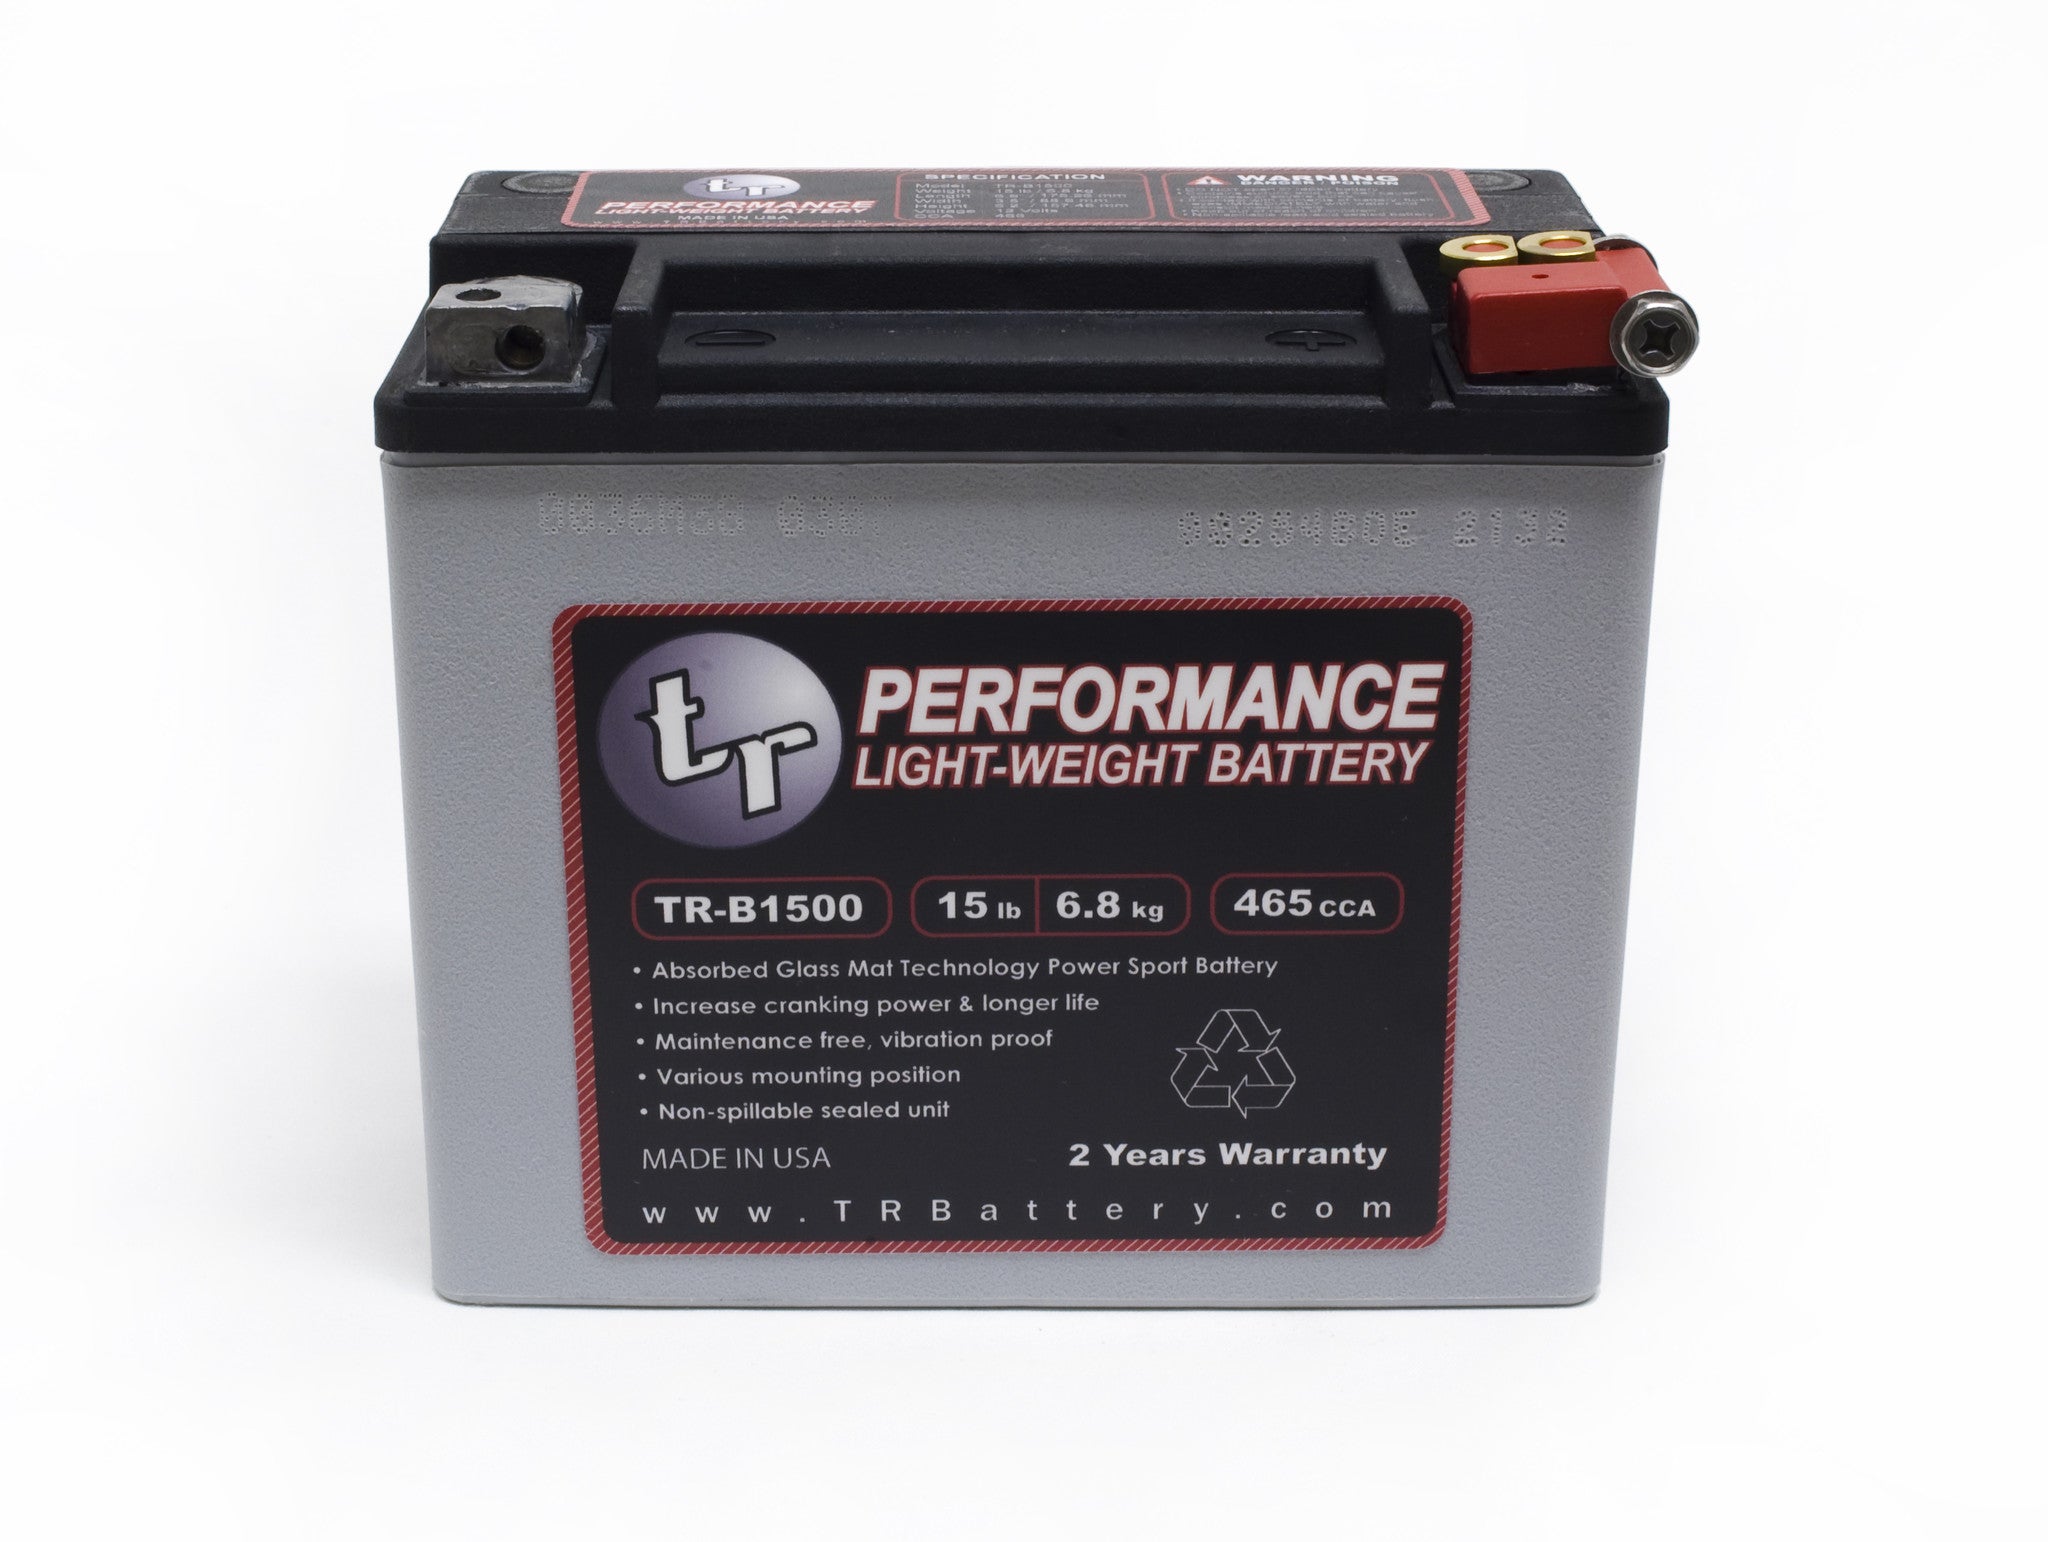 TR-B1500 Lightweight Battery